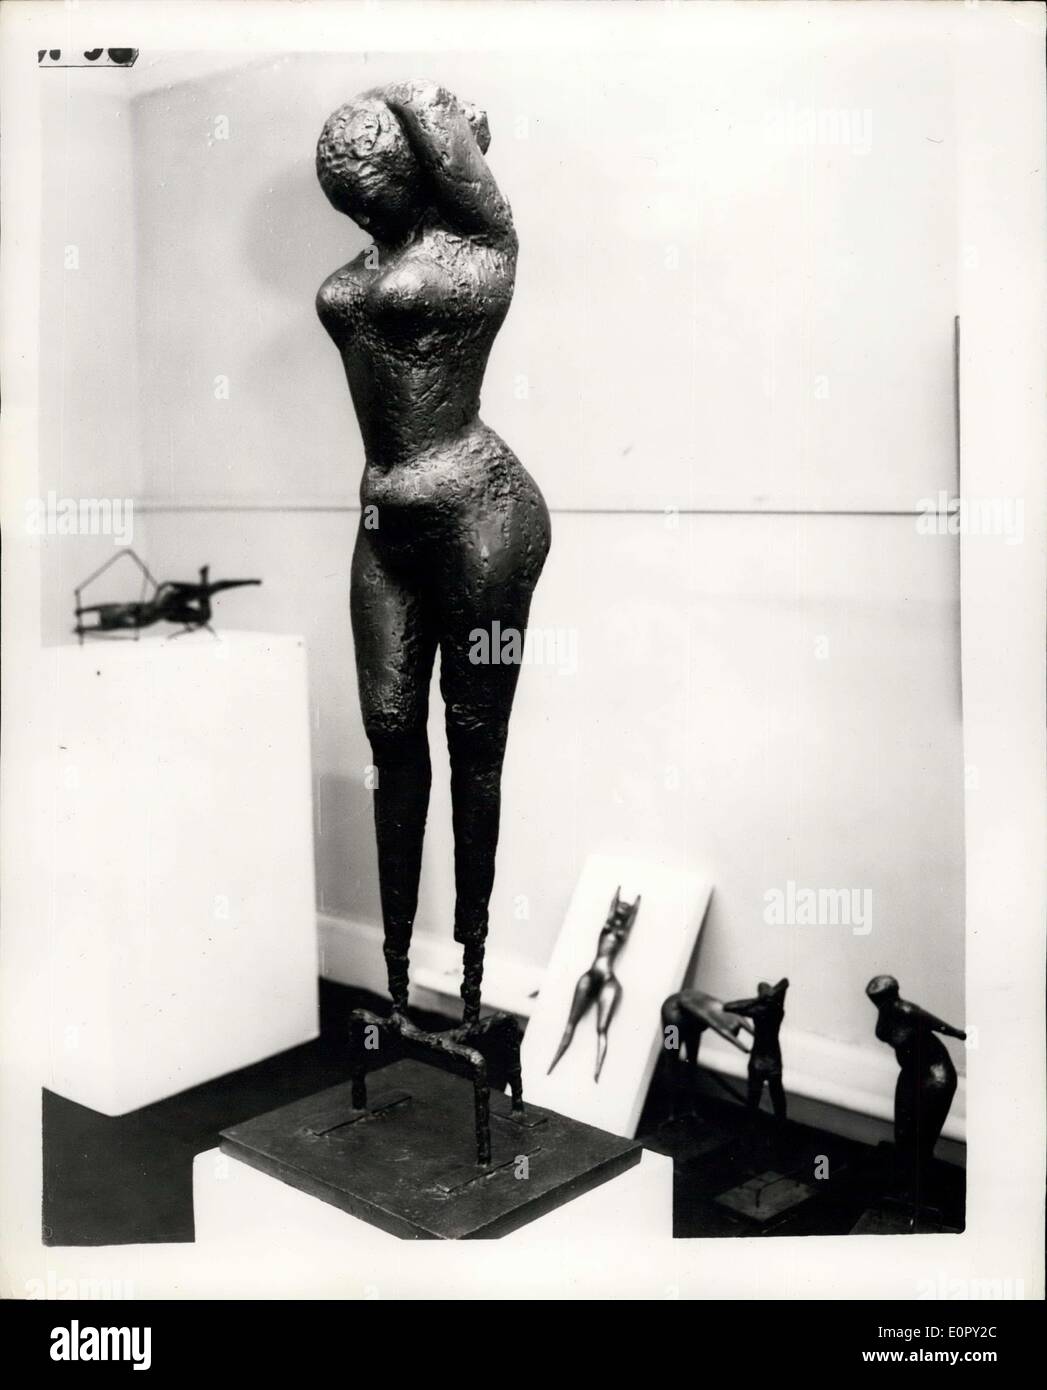 1. Mai 1957 - Ausstellung des roten Butler Skulpturen In London-Gewinner des internationalen Wettbewerbs; " Eine One-man-Show Skulptur von Reg Butler, die zum Ruhm sprang, gewann er den internationalen '' unbekannten politischen Gefangenen ''-Wettbewerb im Jahr 1953 - findet in Hannover Galleries, London. Die Skulpturen der auf diese Auszeichnung sein soll errichtet 200 bis 300 ft. hoch, im Zentrum von Berlin - als Mahnmal für alle, die in NS-Konzentrationslagern starben. Foto zeigt '' Mädchen auf der Suche nach unten '' - eines der Exponate heute. Stockfoto